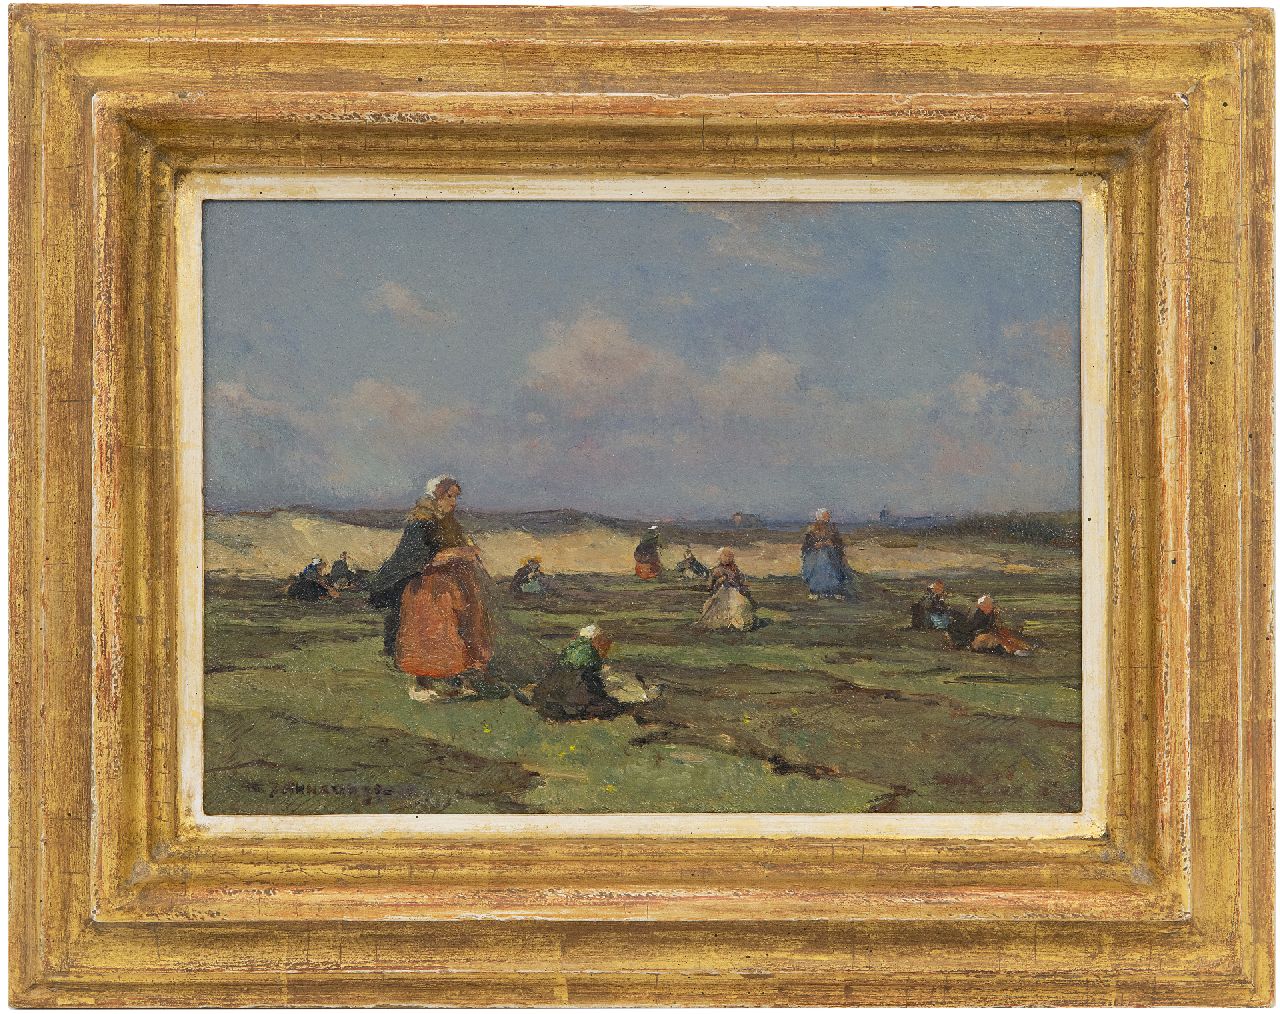 Akkeringa J.E.H.  | 'Johannes Evert' Hendrik Akkeringa | Schilderijen te koop aangeboden | Nettenboetsters in de duinen, olieverf op paneel 17,2 x 24,3 cm, gesigneerd linksonder